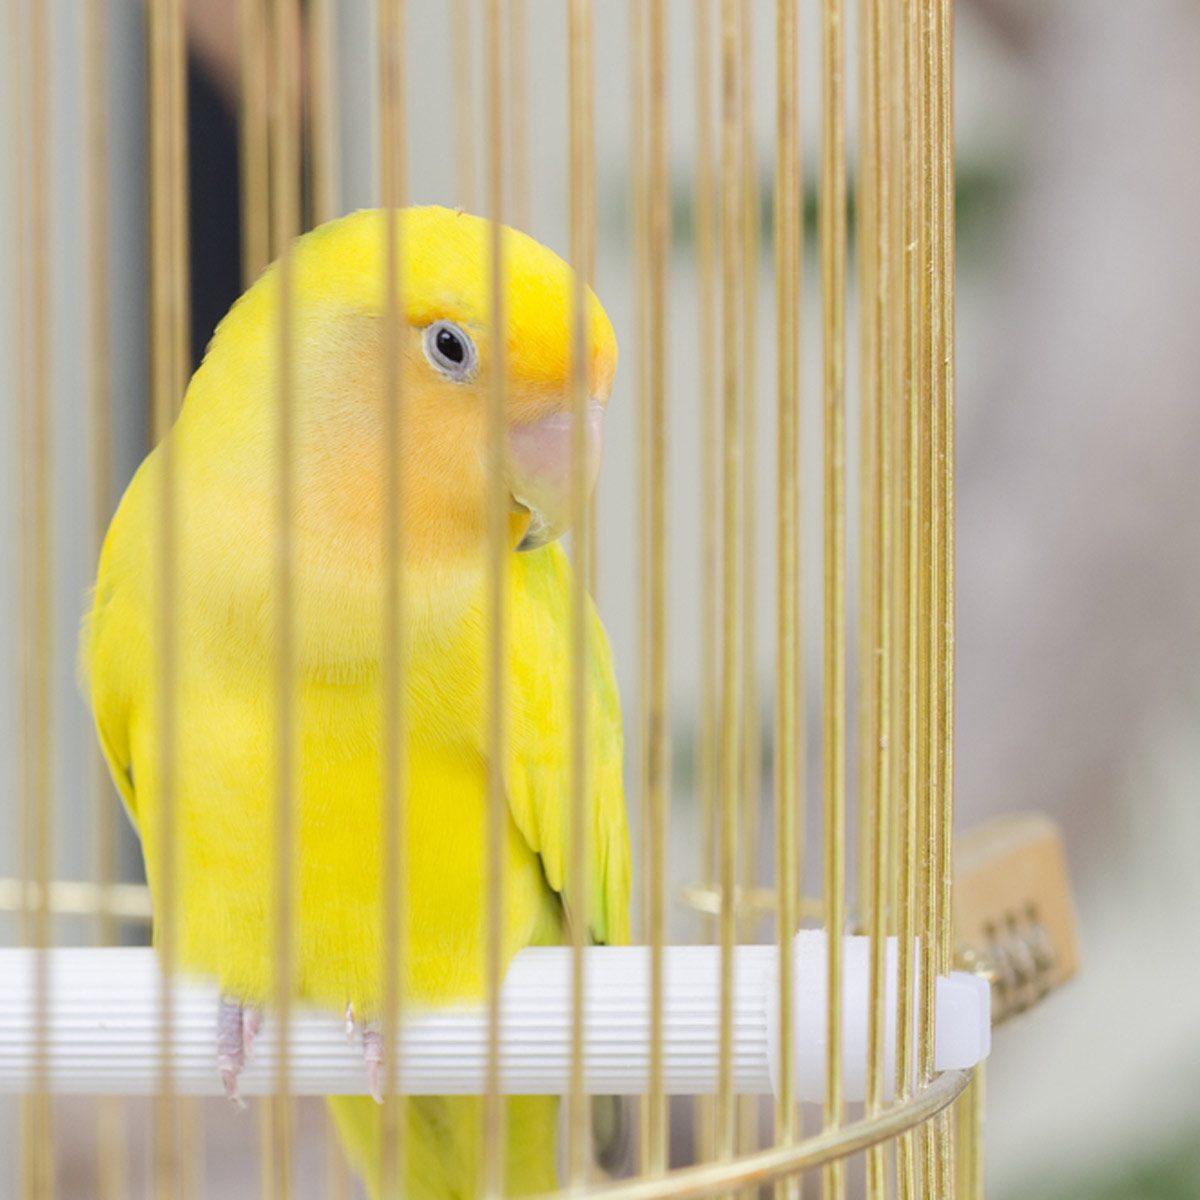 Pet bird in a cade yellow bird